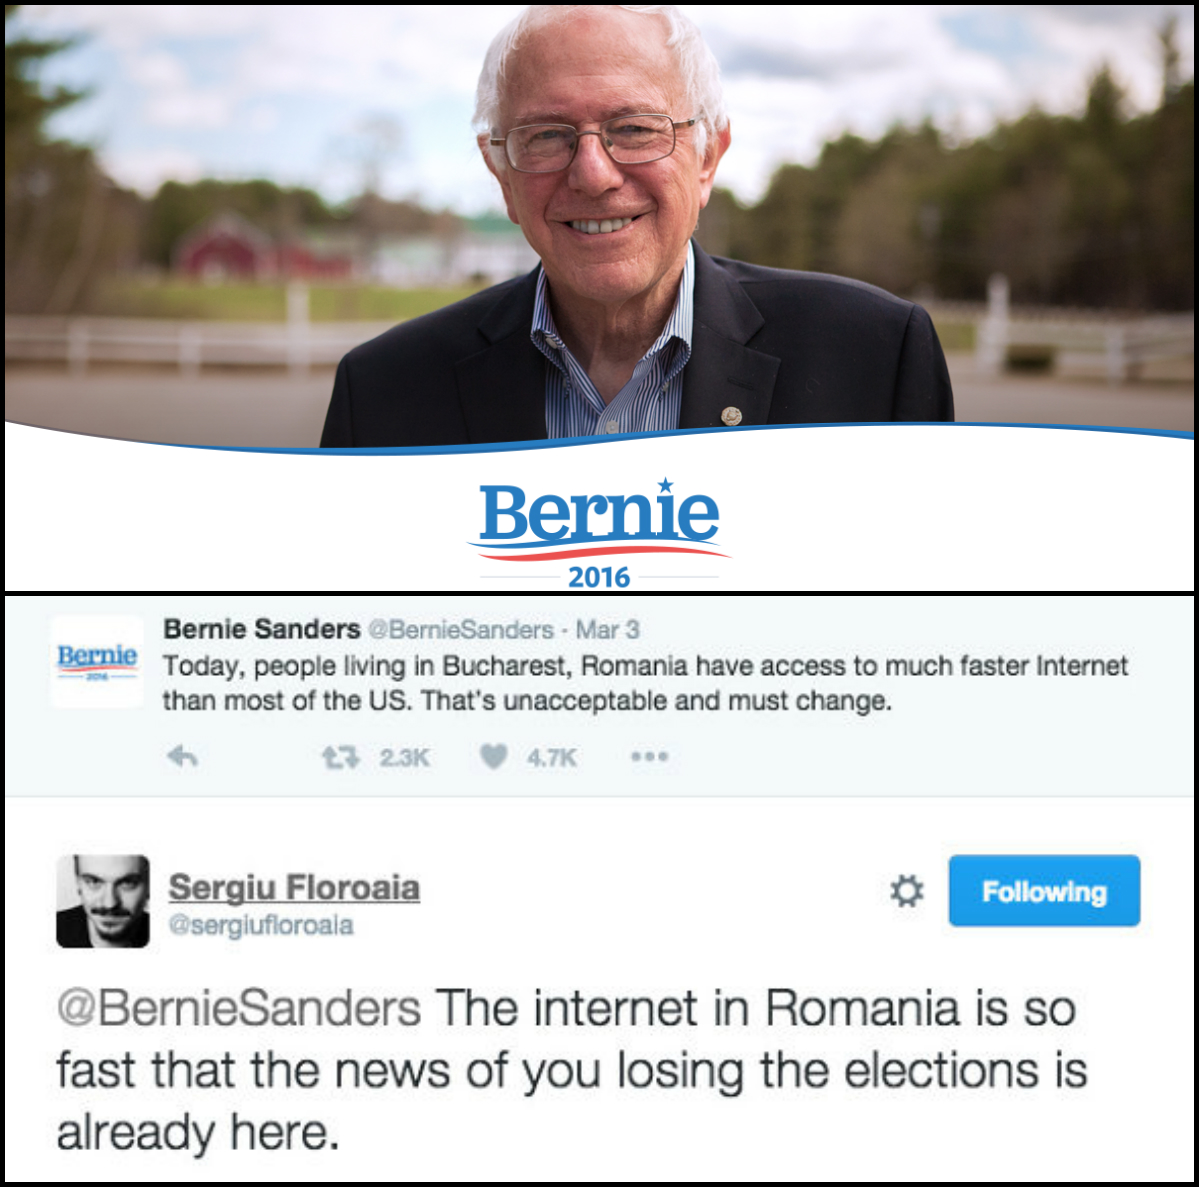 Internetul din România este atât de rapid, că vestea cum că Bernie Sanders a pierdut alegerile deja a ajuns la noi”, a fost una dintre glumele internauţilor români